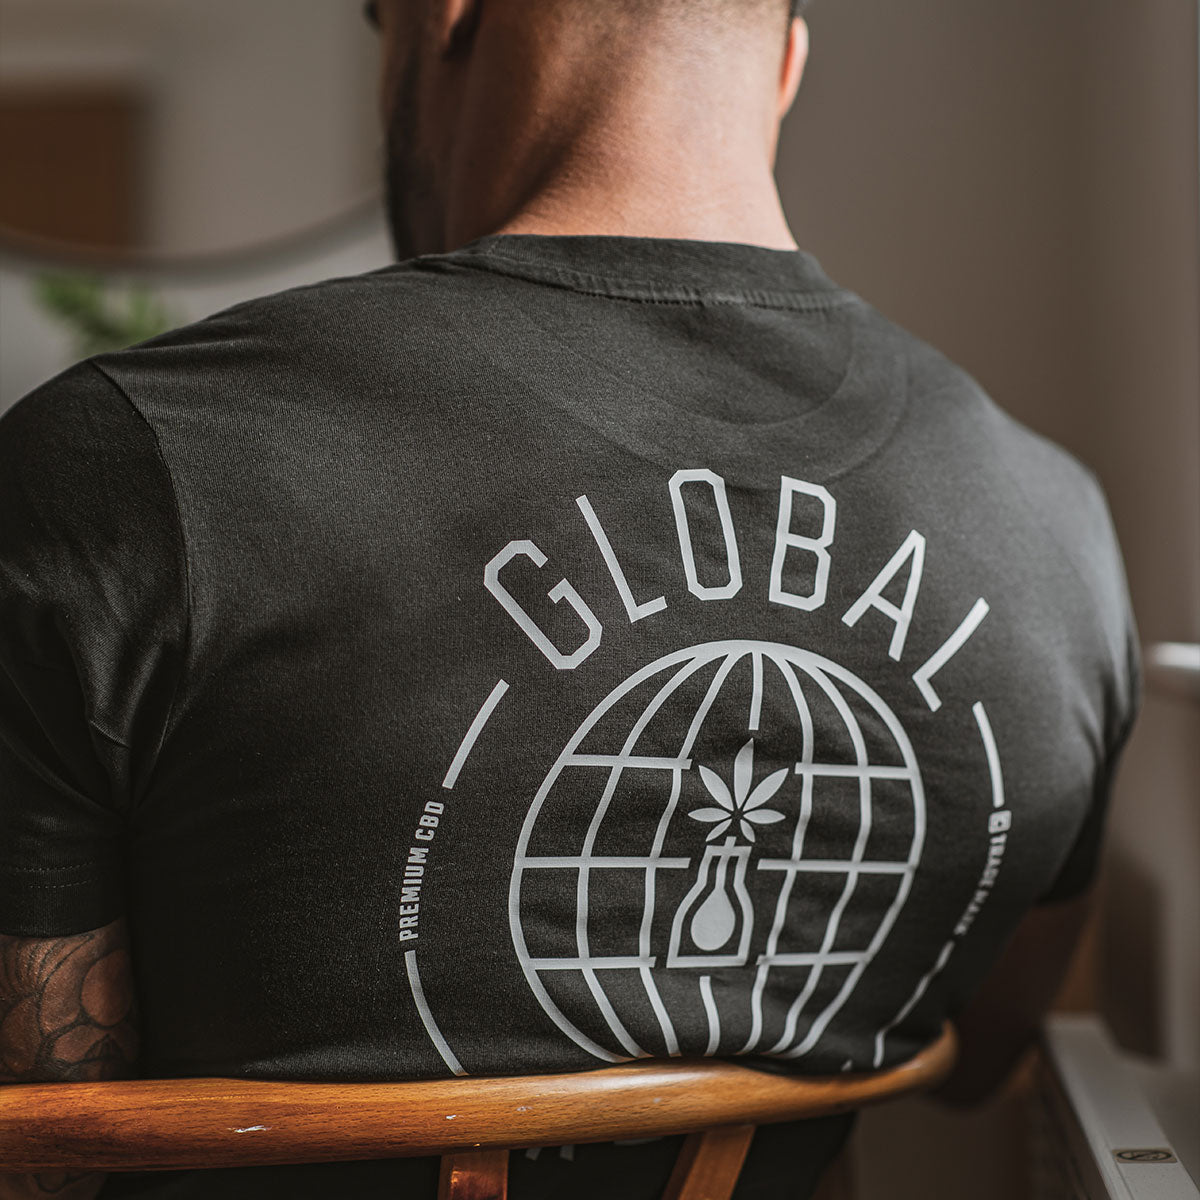 Global Globe Shirt